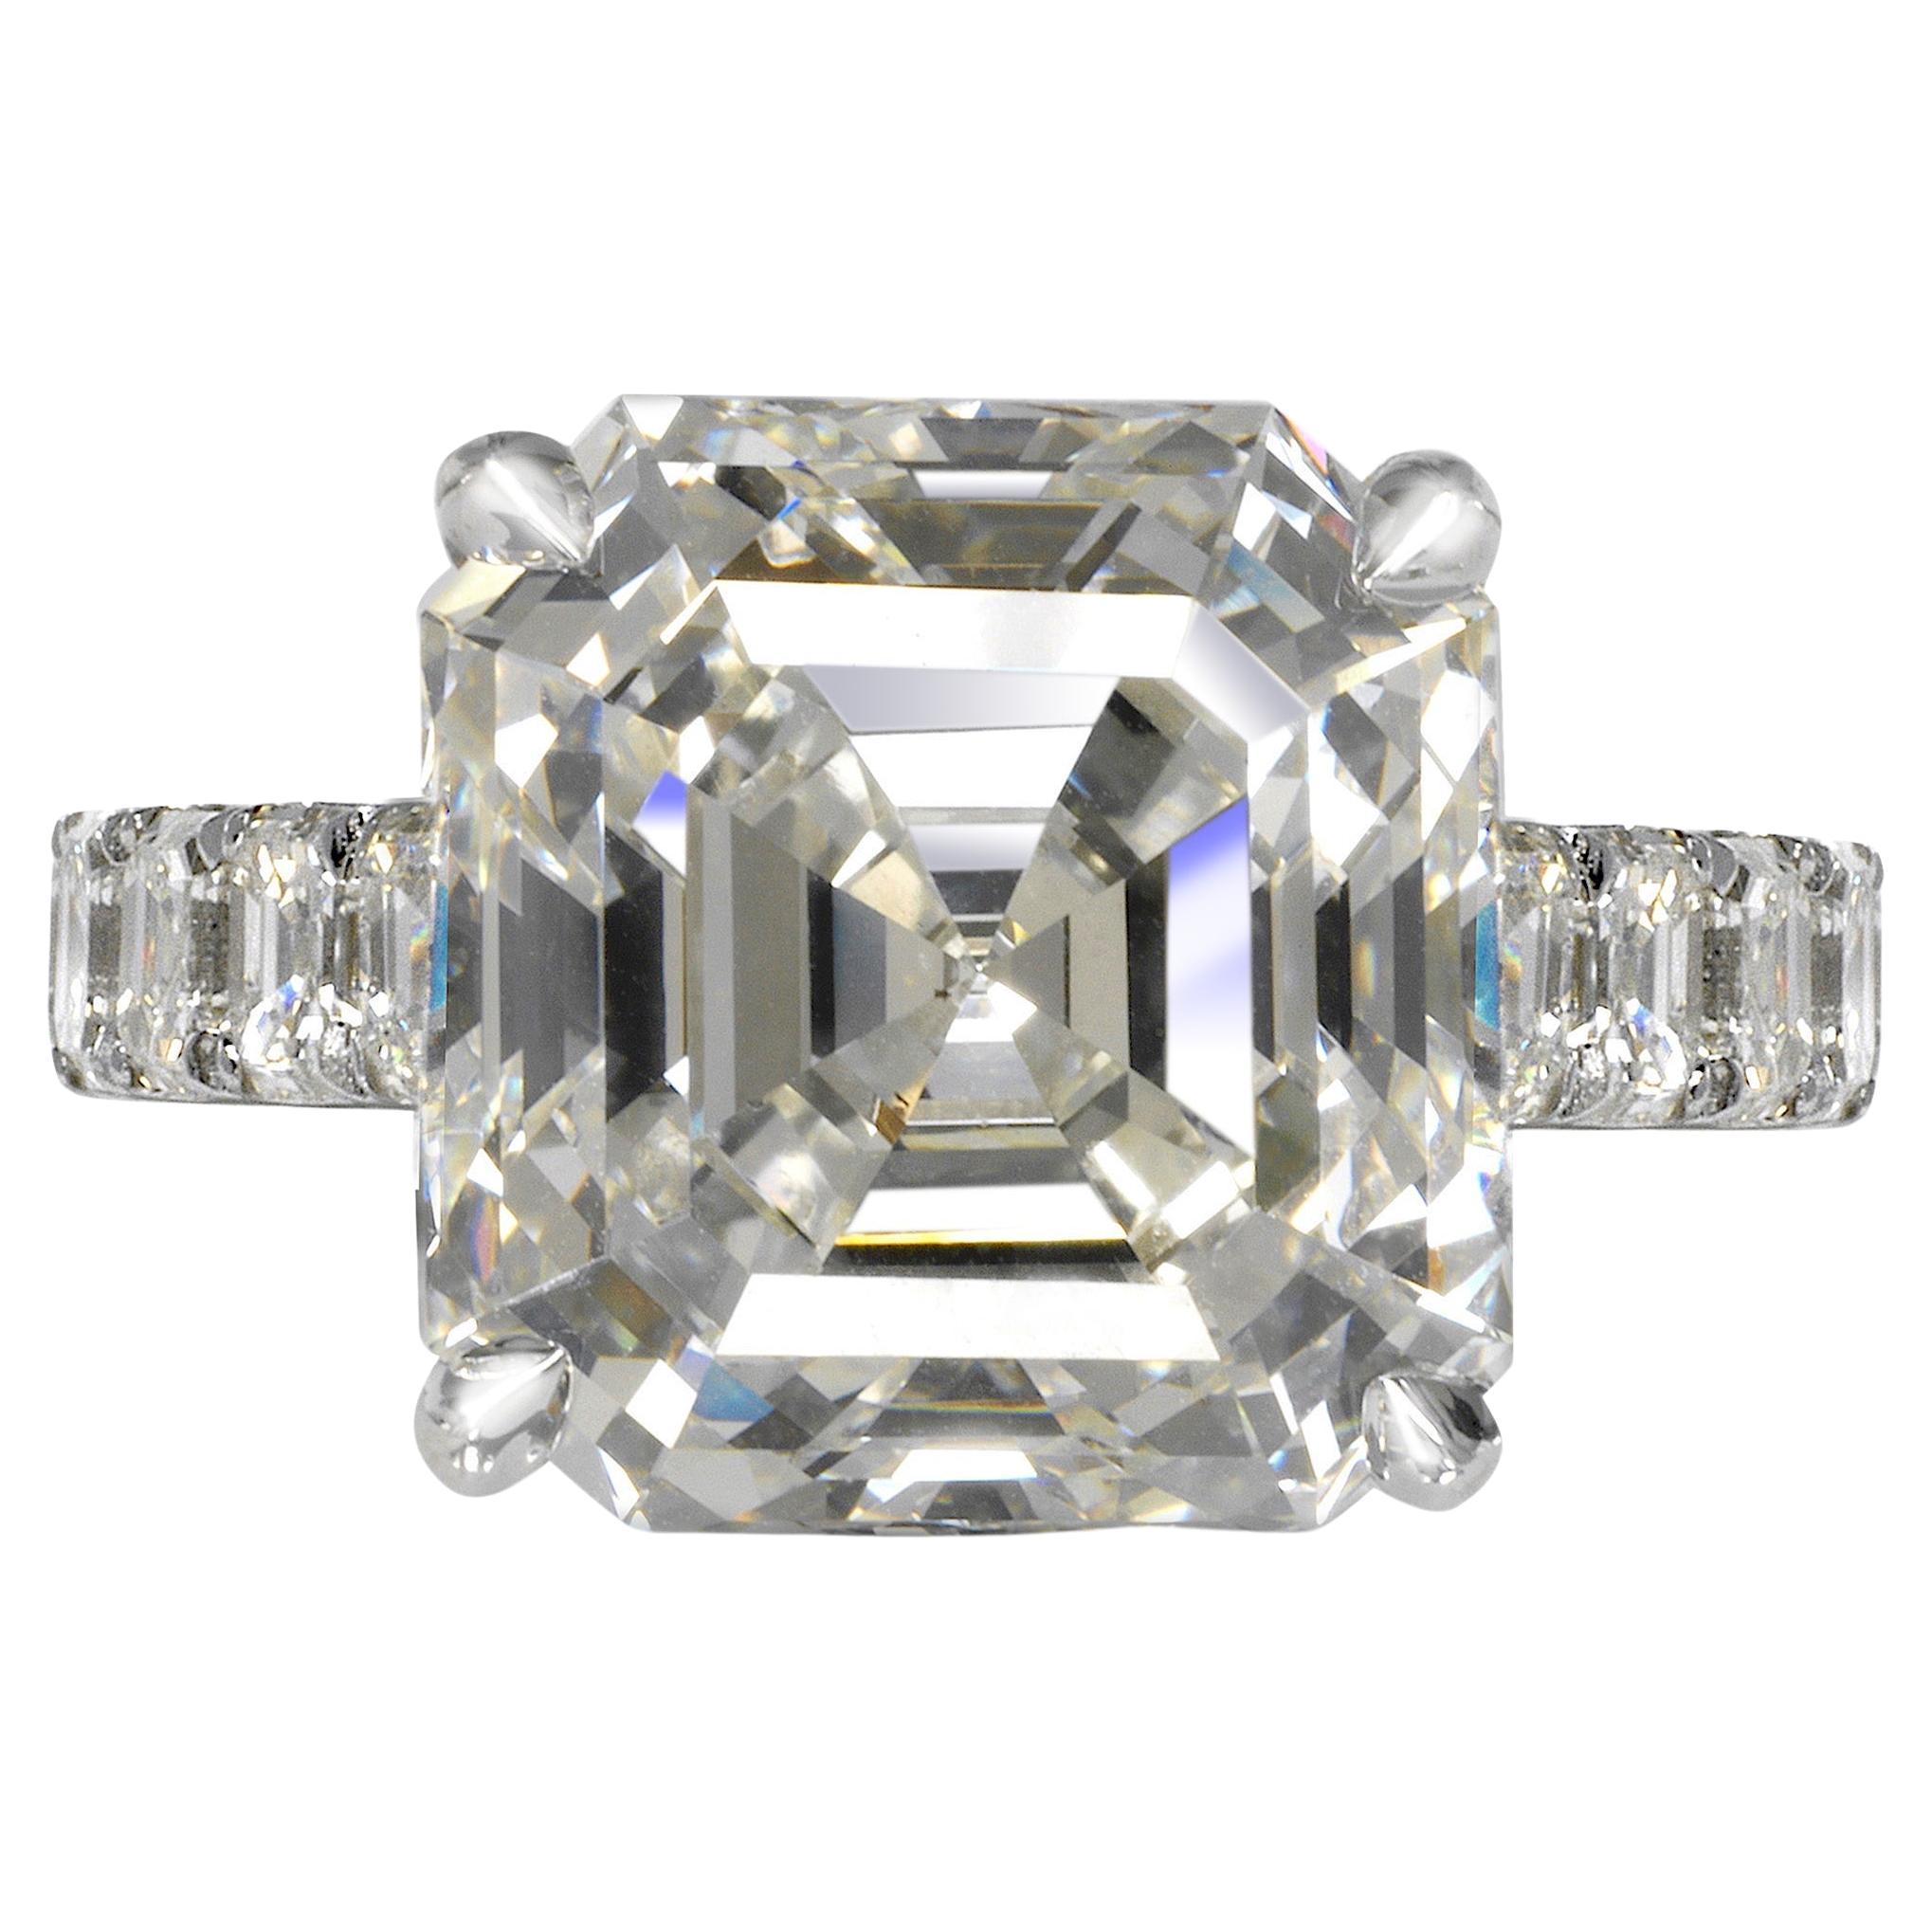 12 Carat Asscher Cut Diamond Engagement Ring GIA Certified J VS2